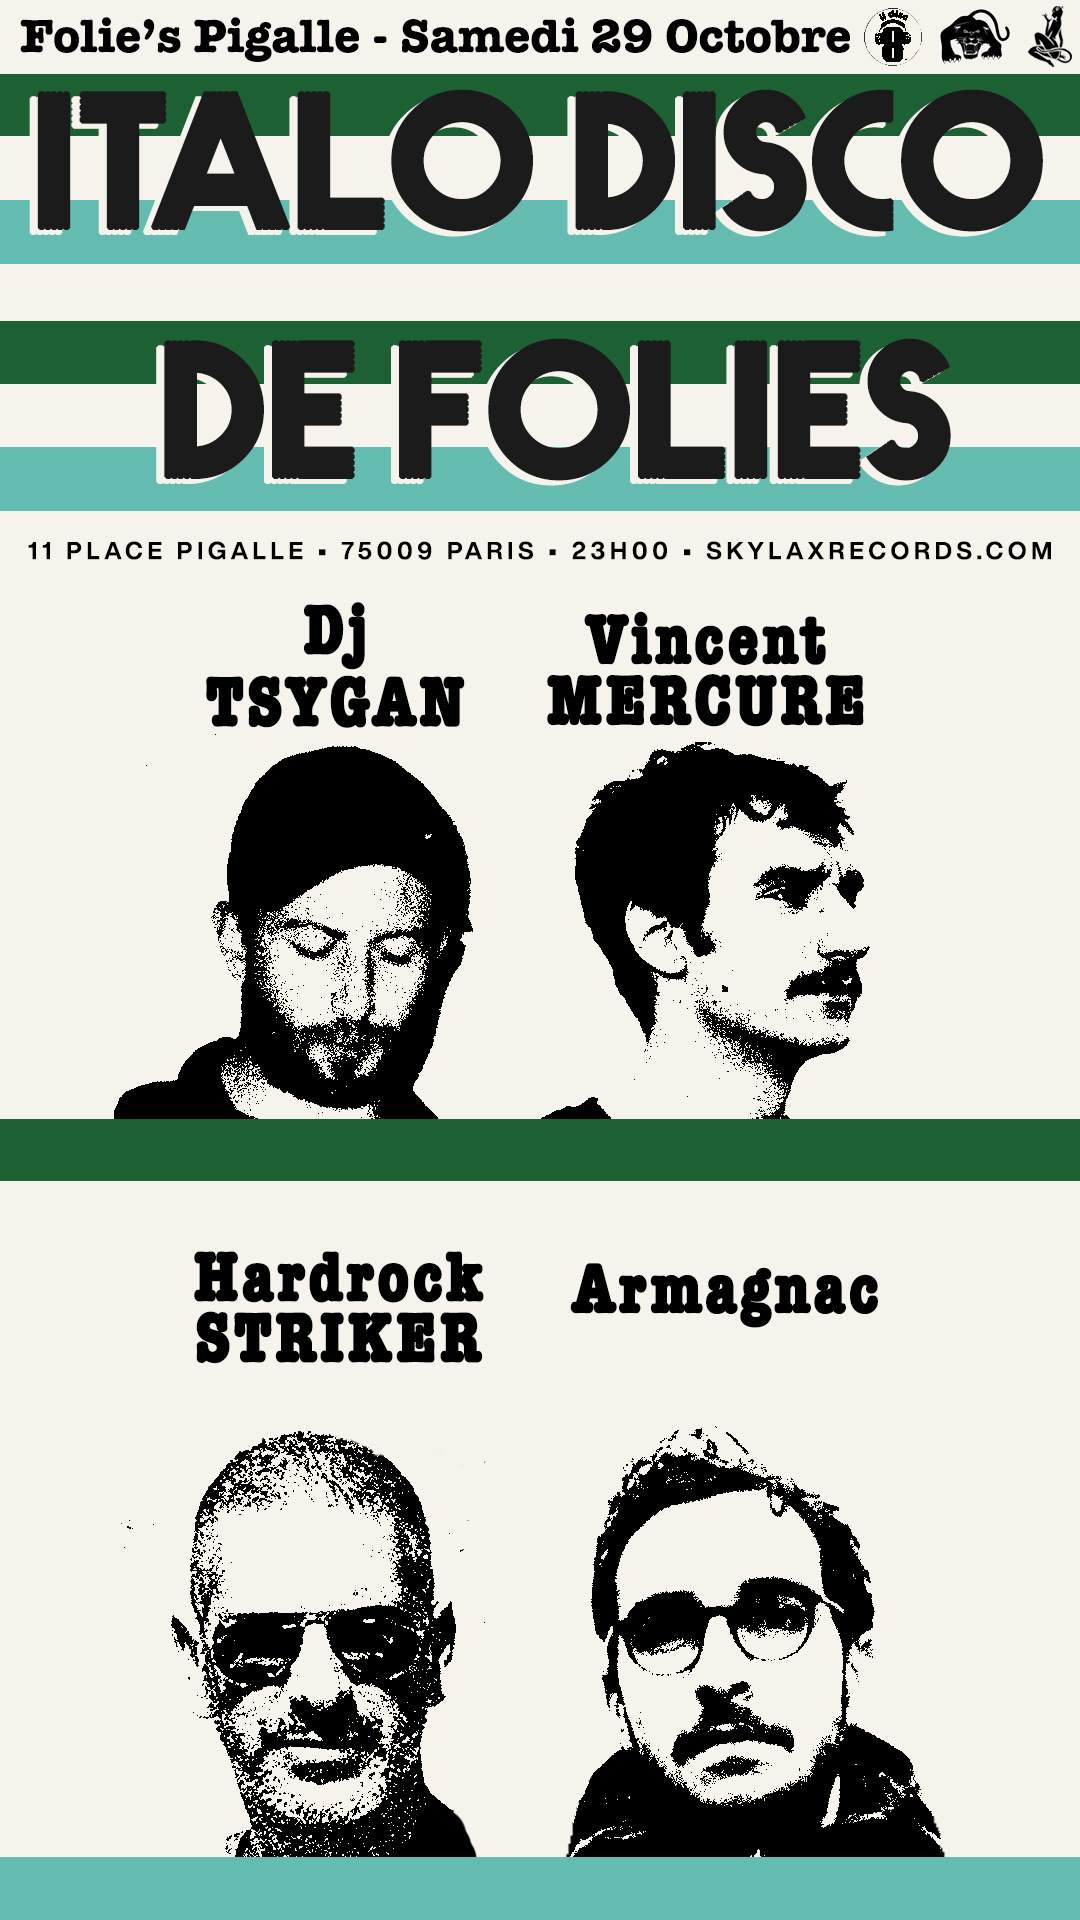 Italo Disco de Folies with Hardrock Striker, DJ Tsygan, Armagnac & Vincent Mercure - フライヤー裏